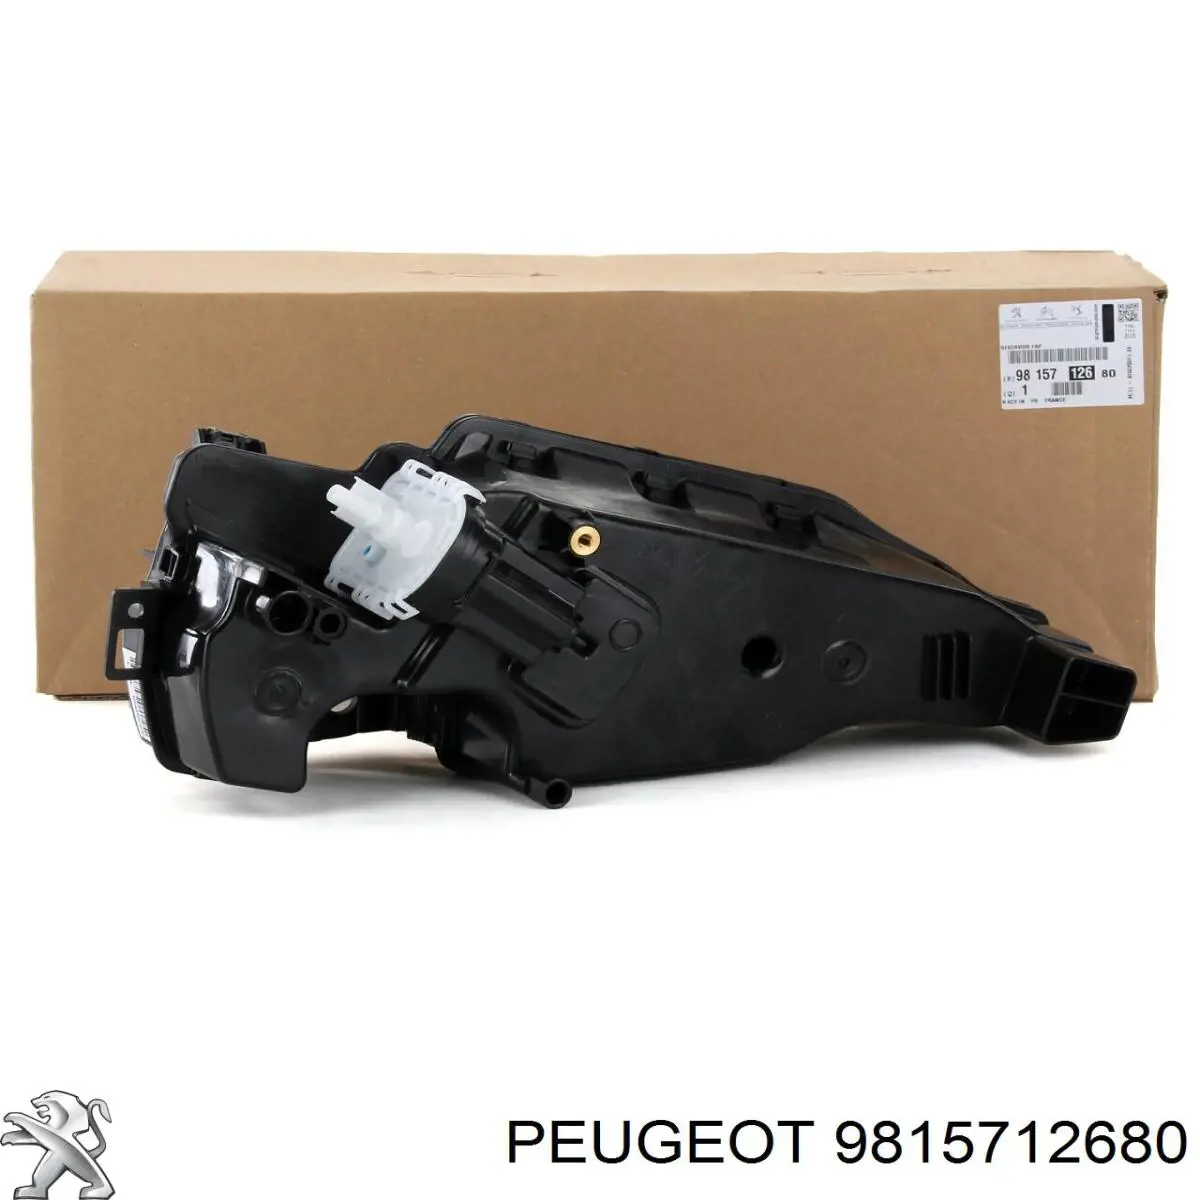 9815712680 Peugeot/Citroen depósito de adblue